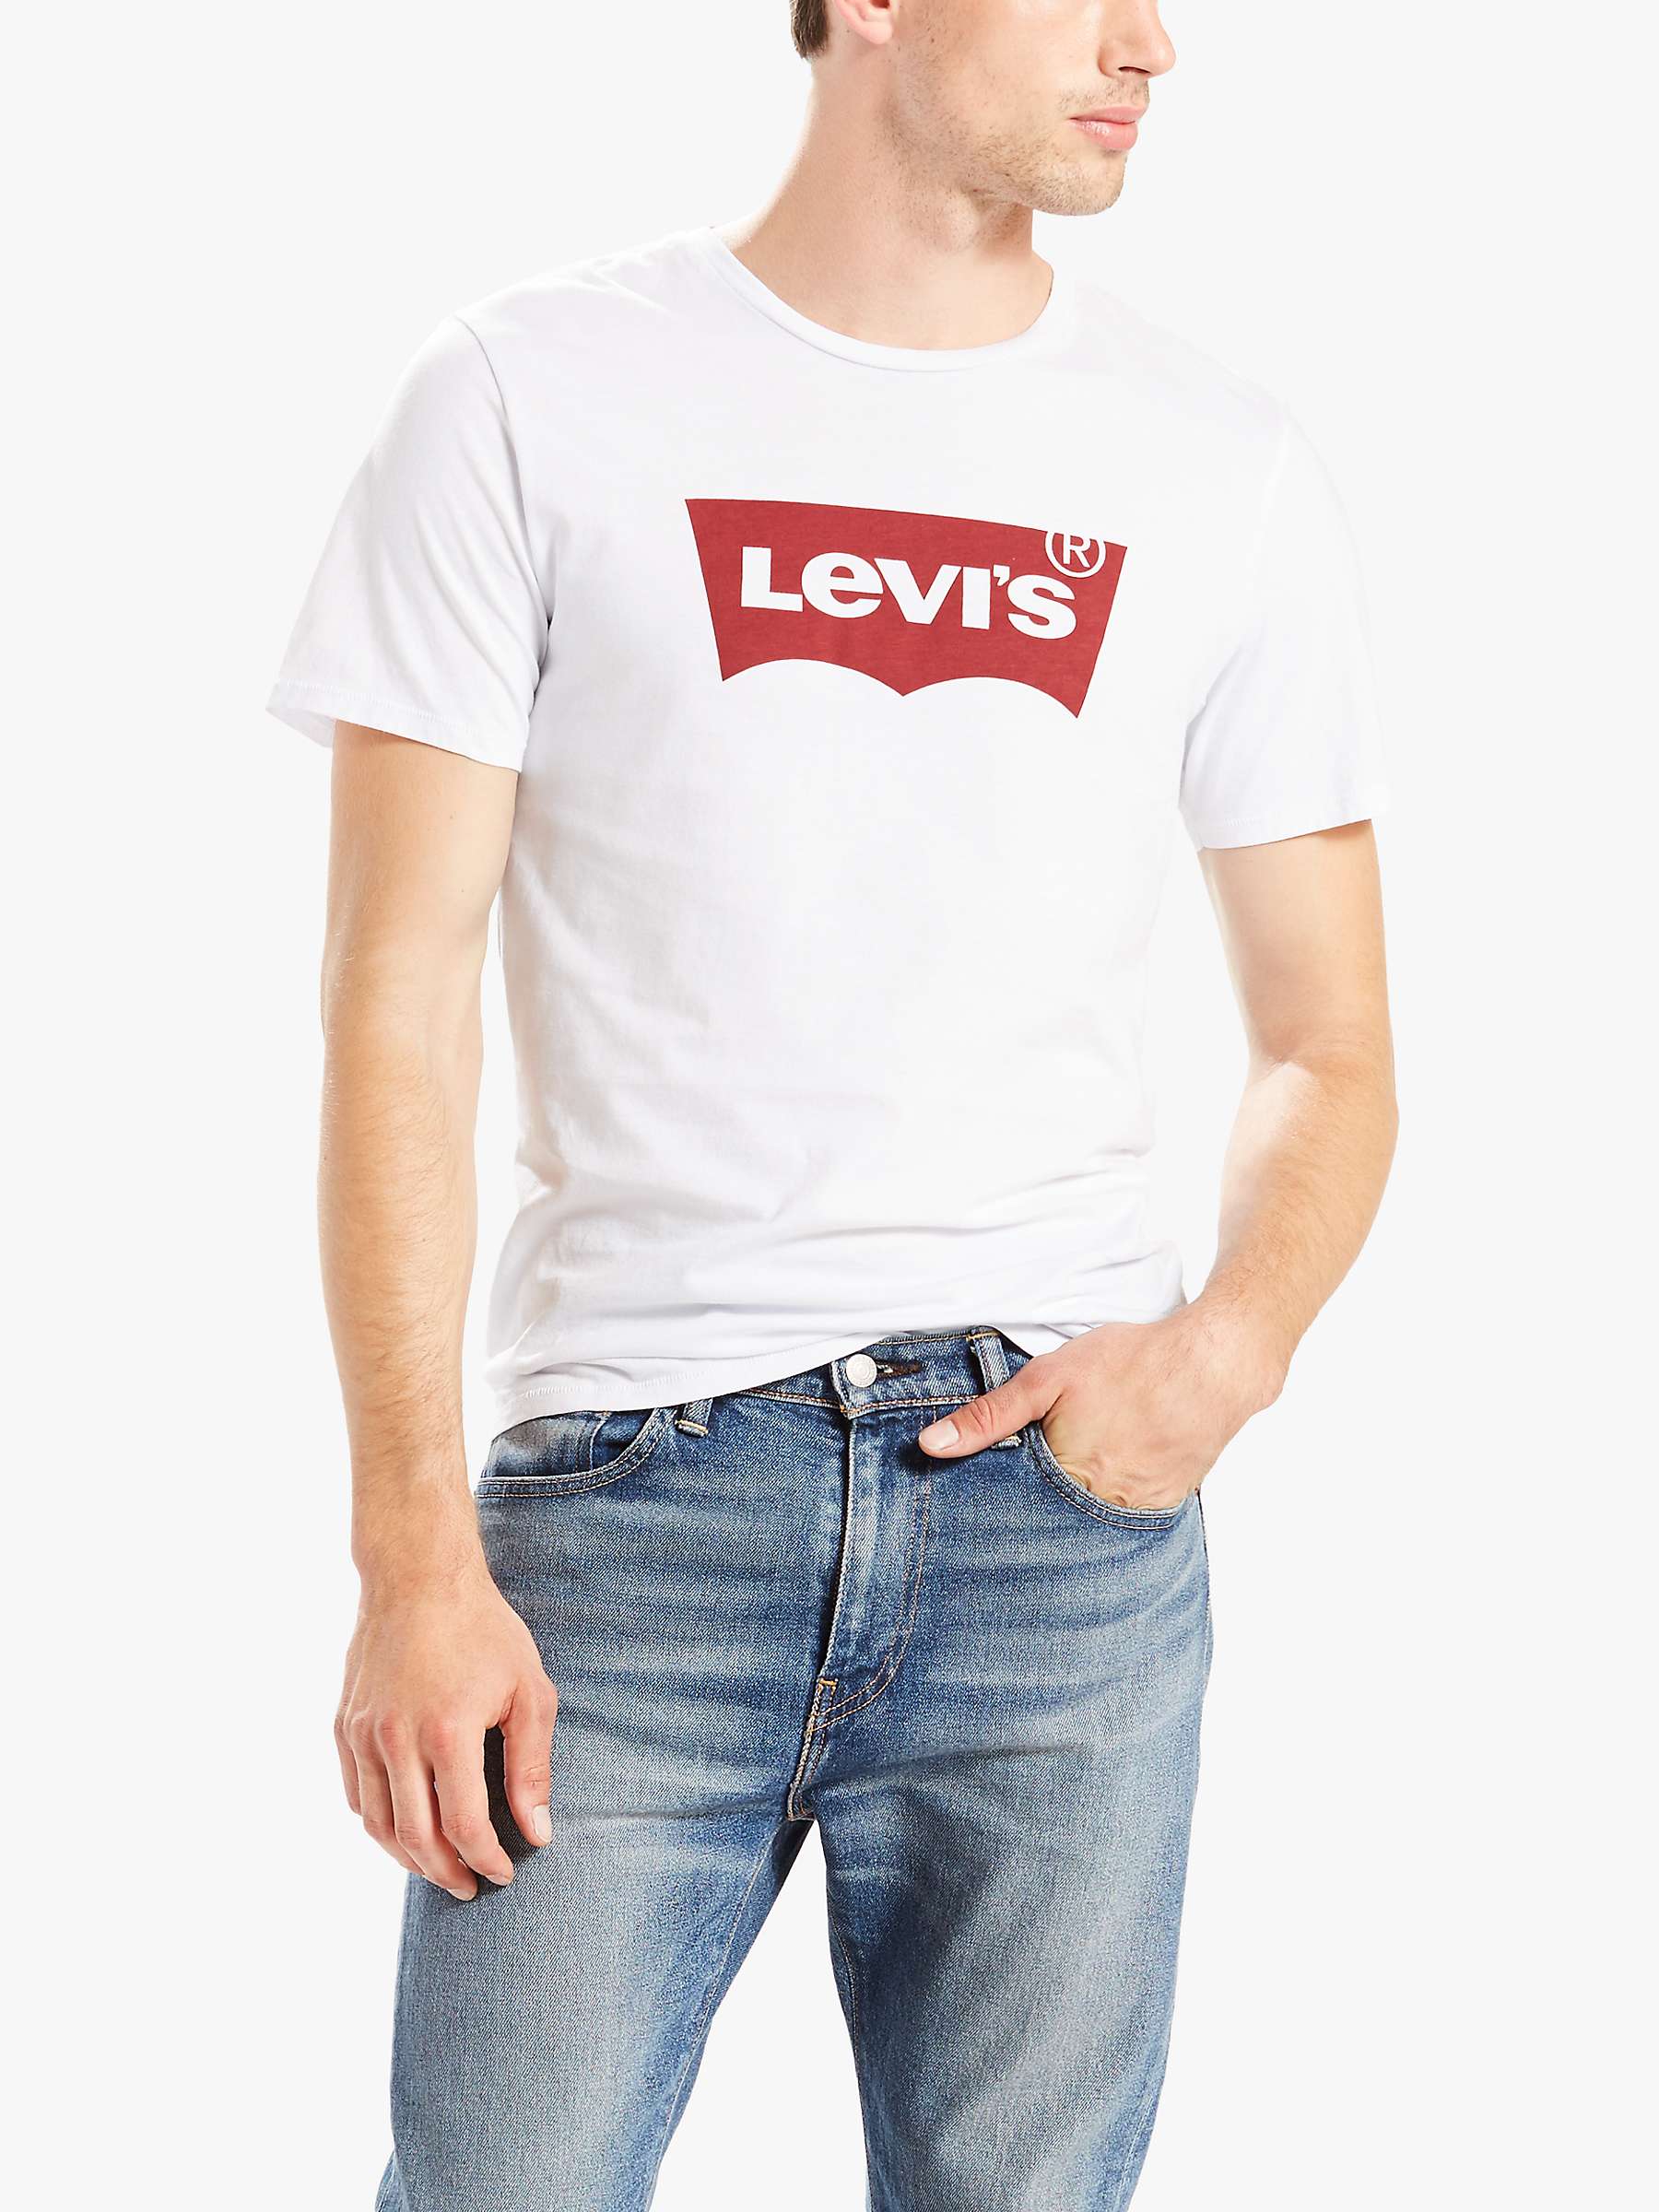 Лев ис. Майка Levis мужские. Levis logo футболка. Майка Левис белая. Футболка левайс мужская белая.